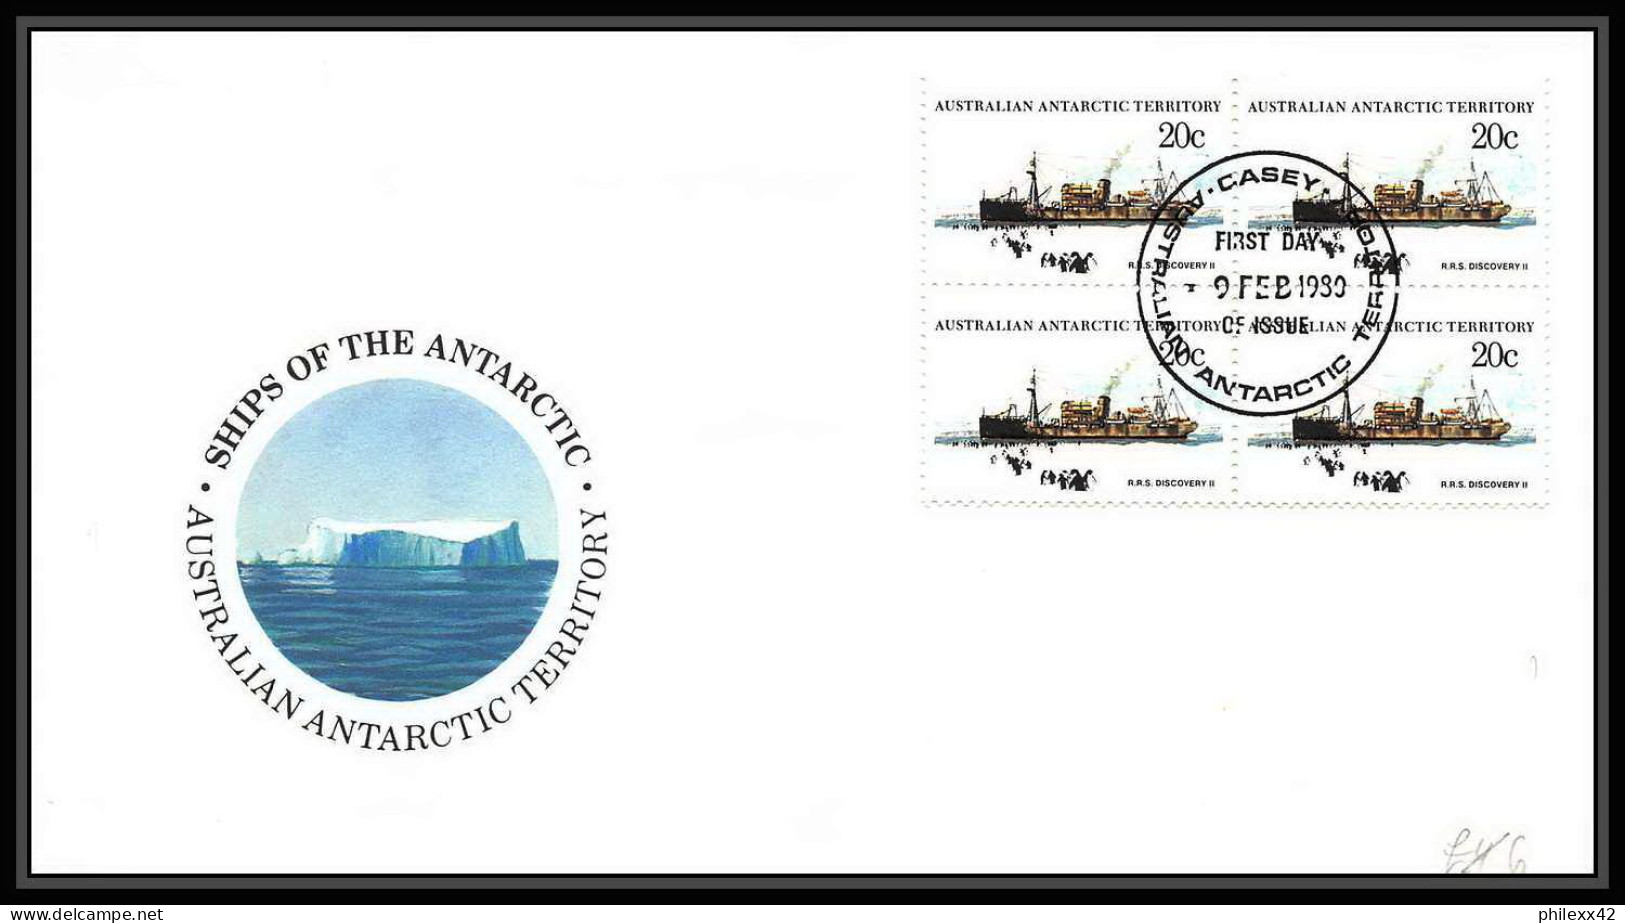 0949 Antarctic Polar Antarctica australian Antarctic territory lot de 12 Lettre (cover) bateau (bateaux ship ships) Bloc